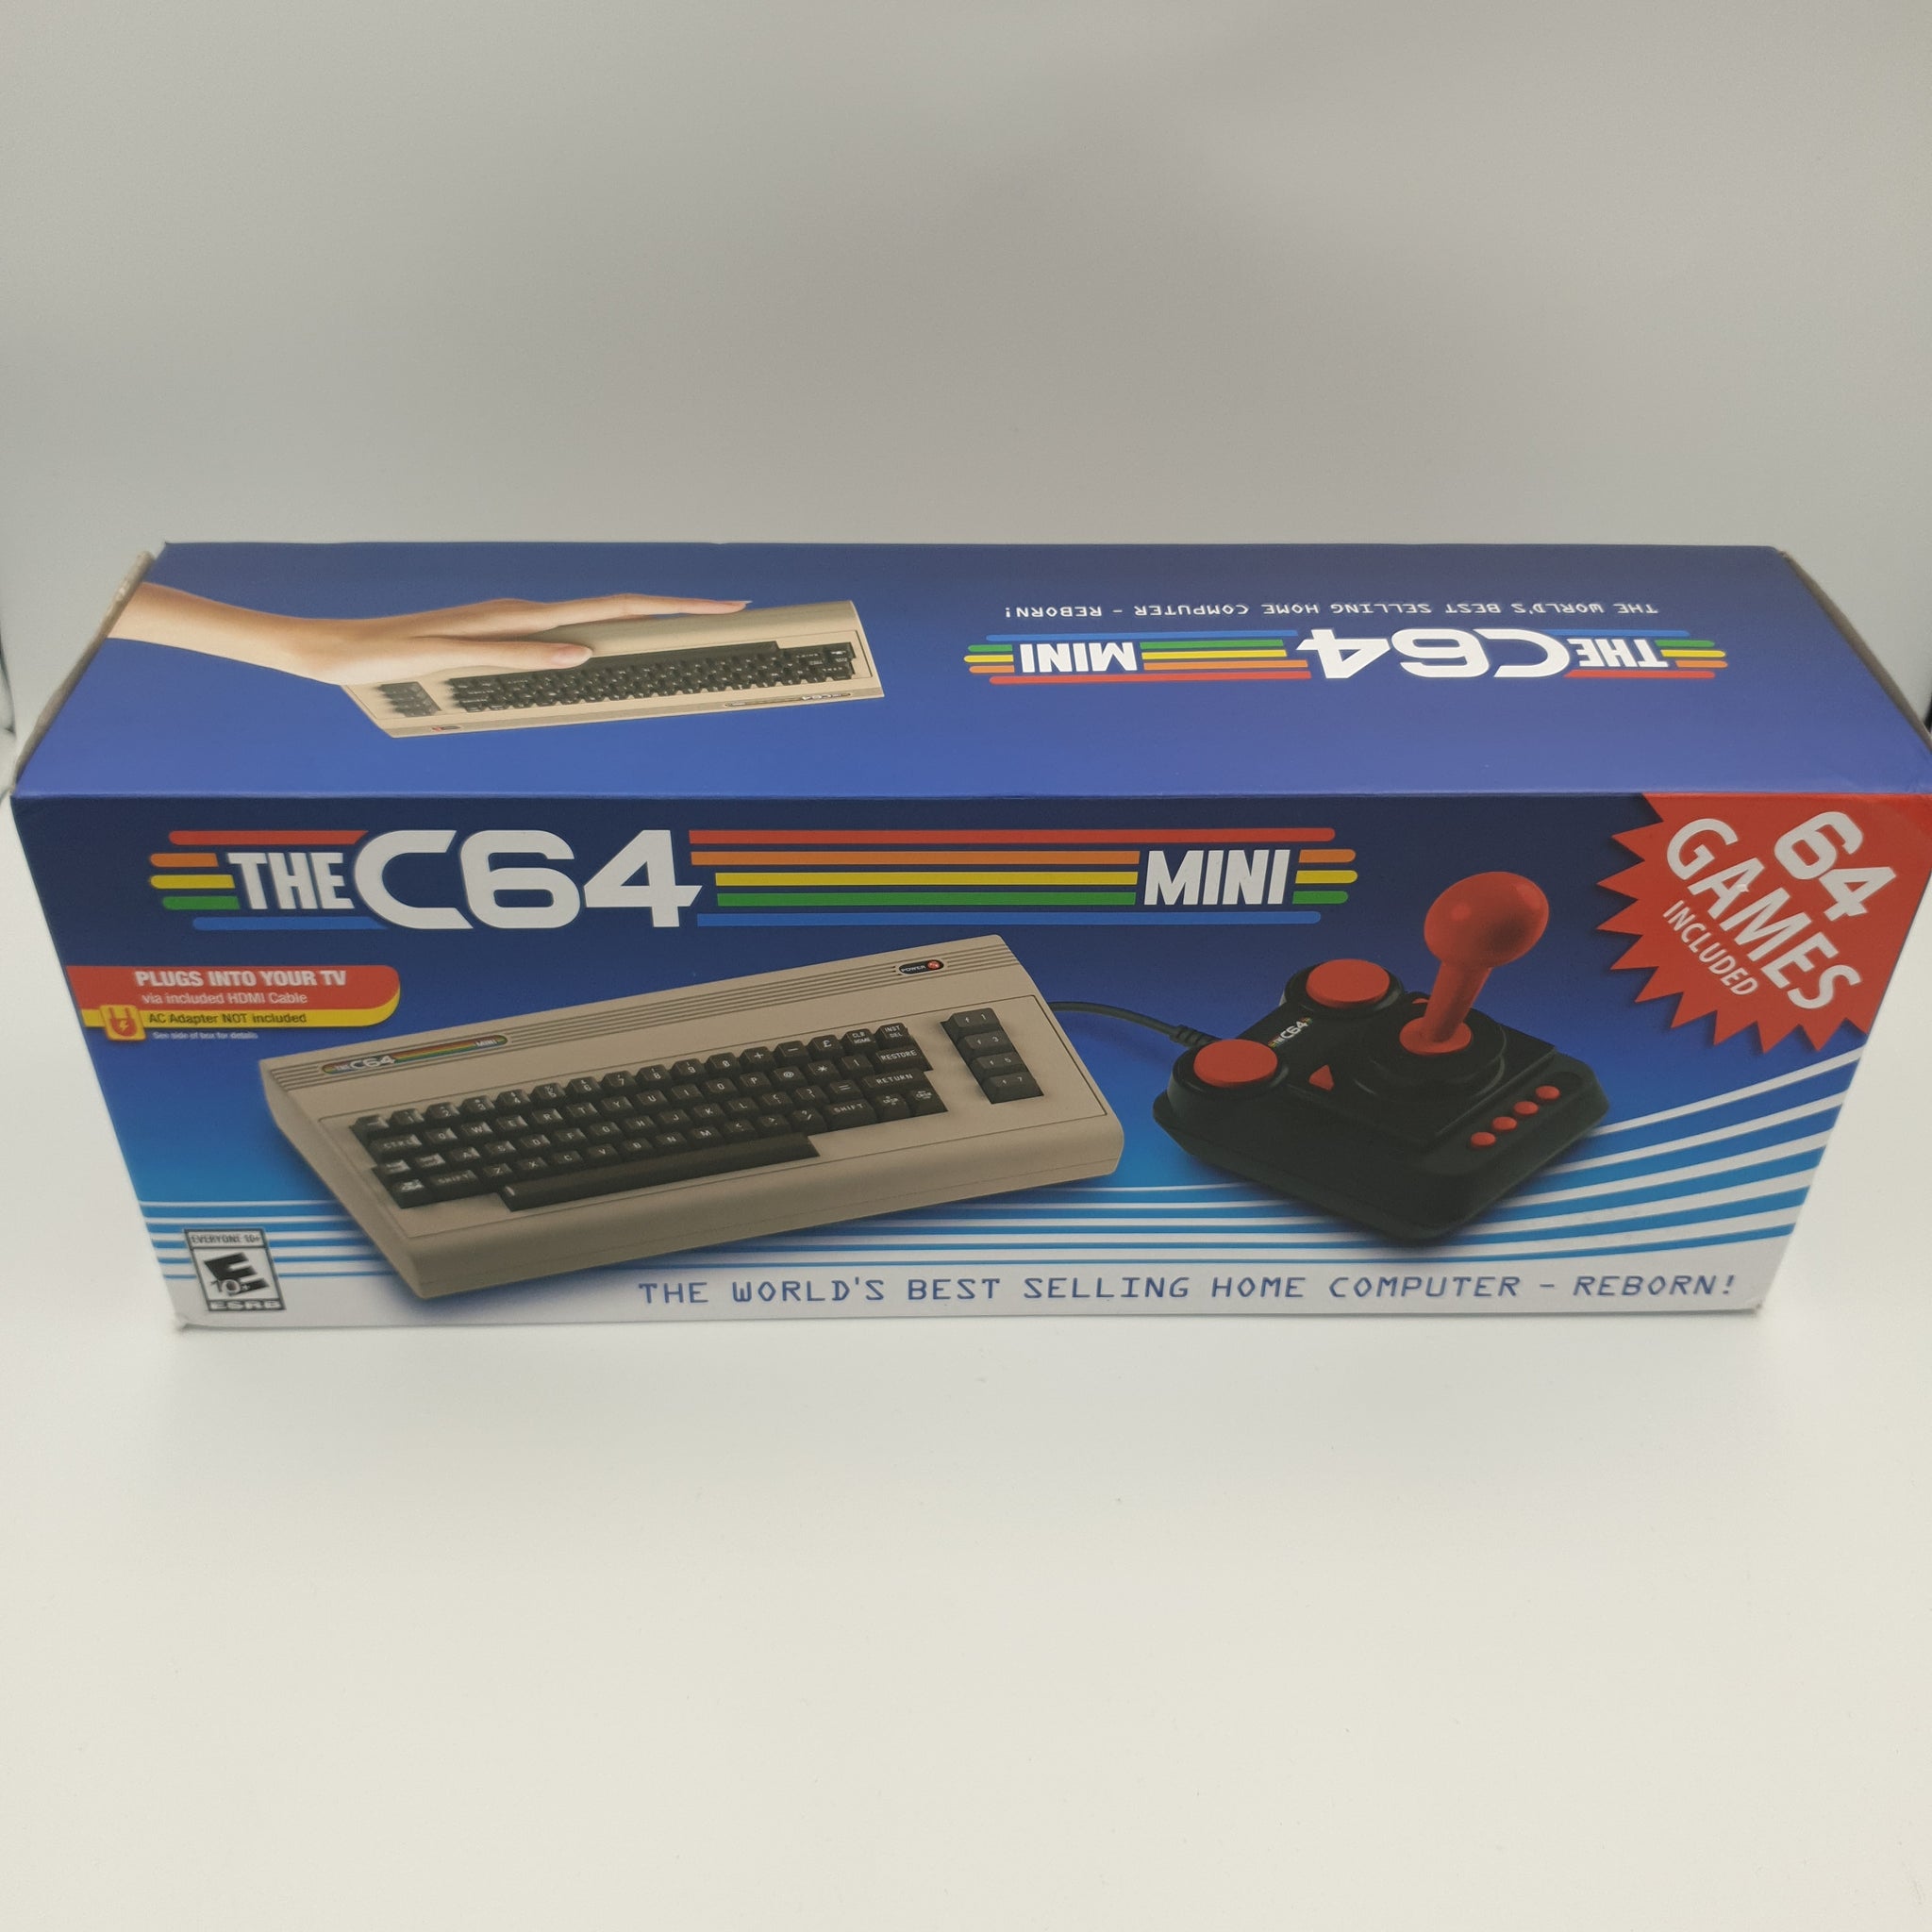 THE C64 MINI 64